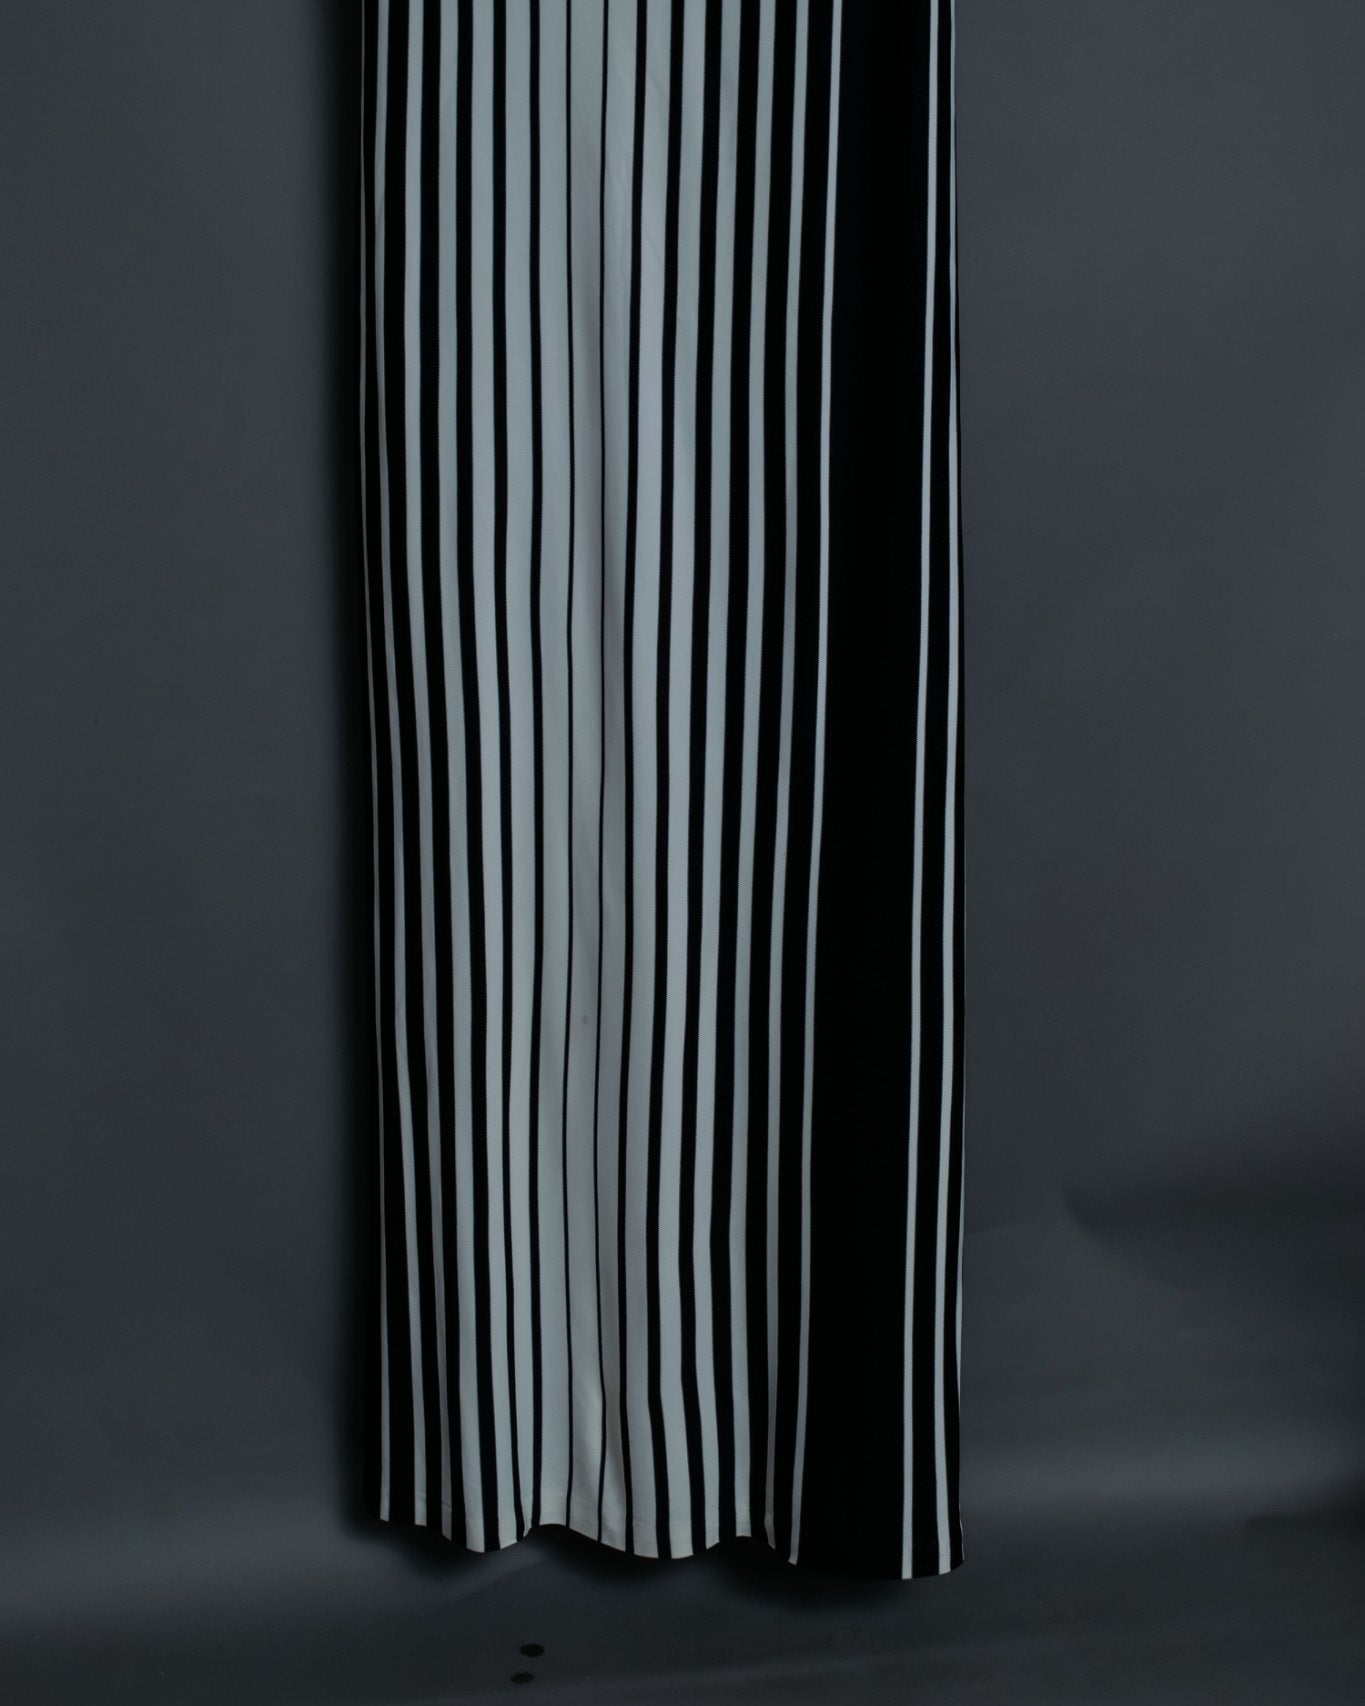 Long Unisex Striped Summer Dress